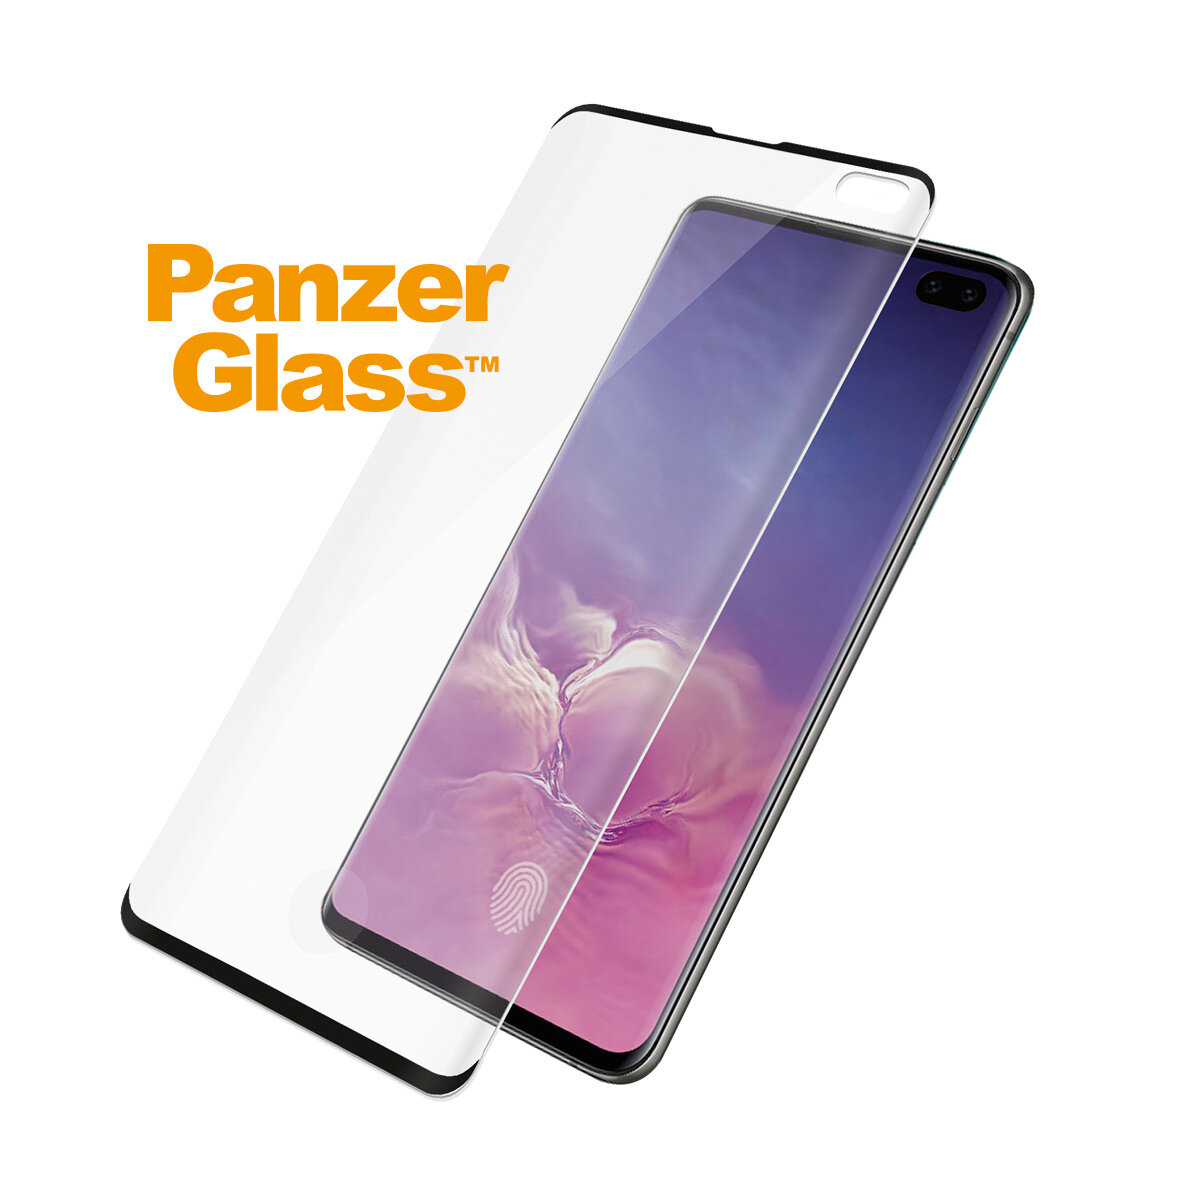 	Szkło hartowane PanzerGlass do Samsung Galaxy S10+ czarne szkło i telefon pod kątem od prawej strony